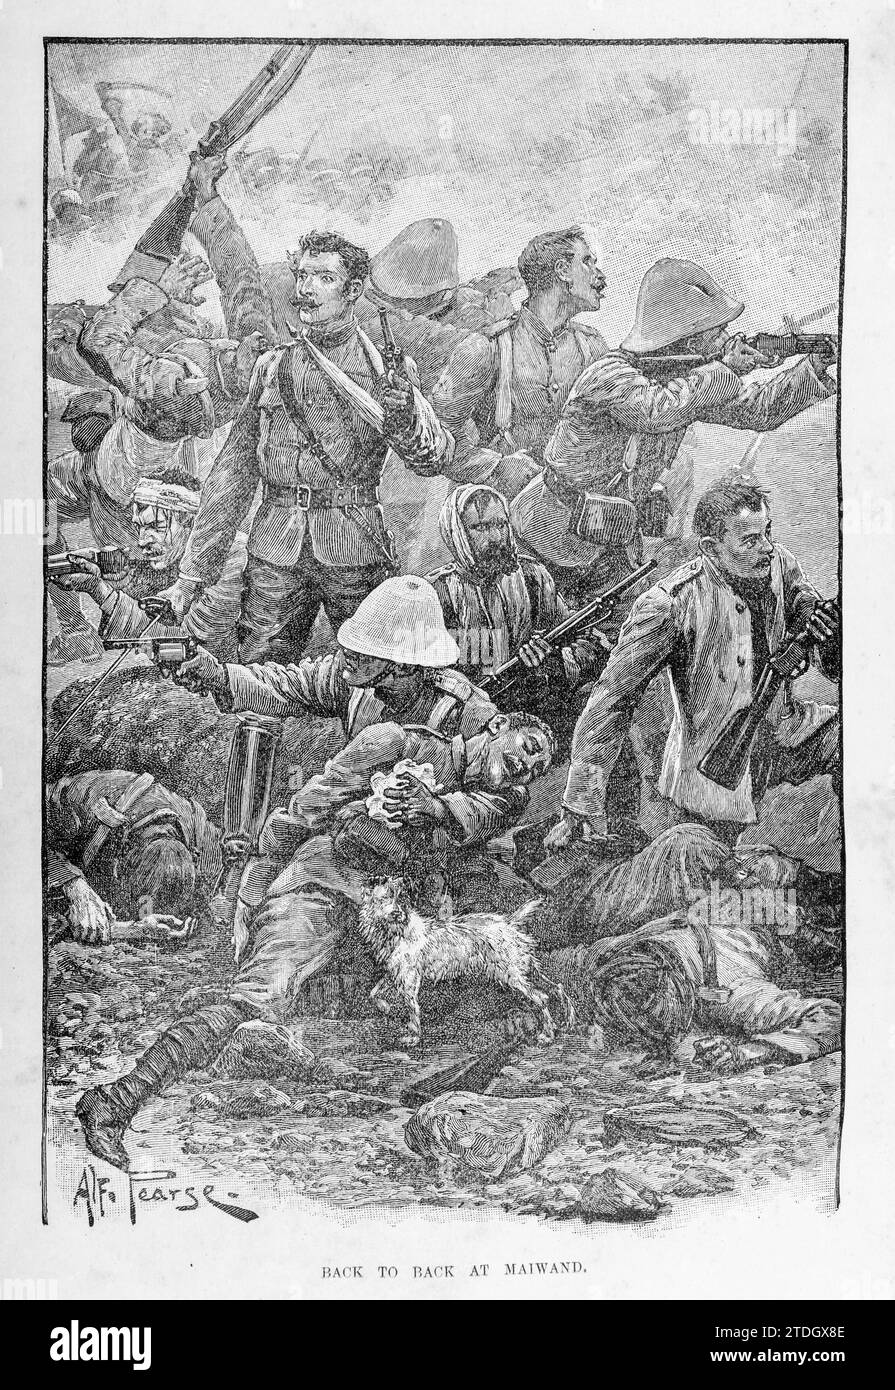 L'ultima resistenza del 66° reggimento alla battaglia di Maiwand (27 luglio 1880) durante la seconda guerra afghana. Solo poche truppe britanniche sopravvissero, insieme al cane Bobbie, la mascotte del reggimento Foto Stock